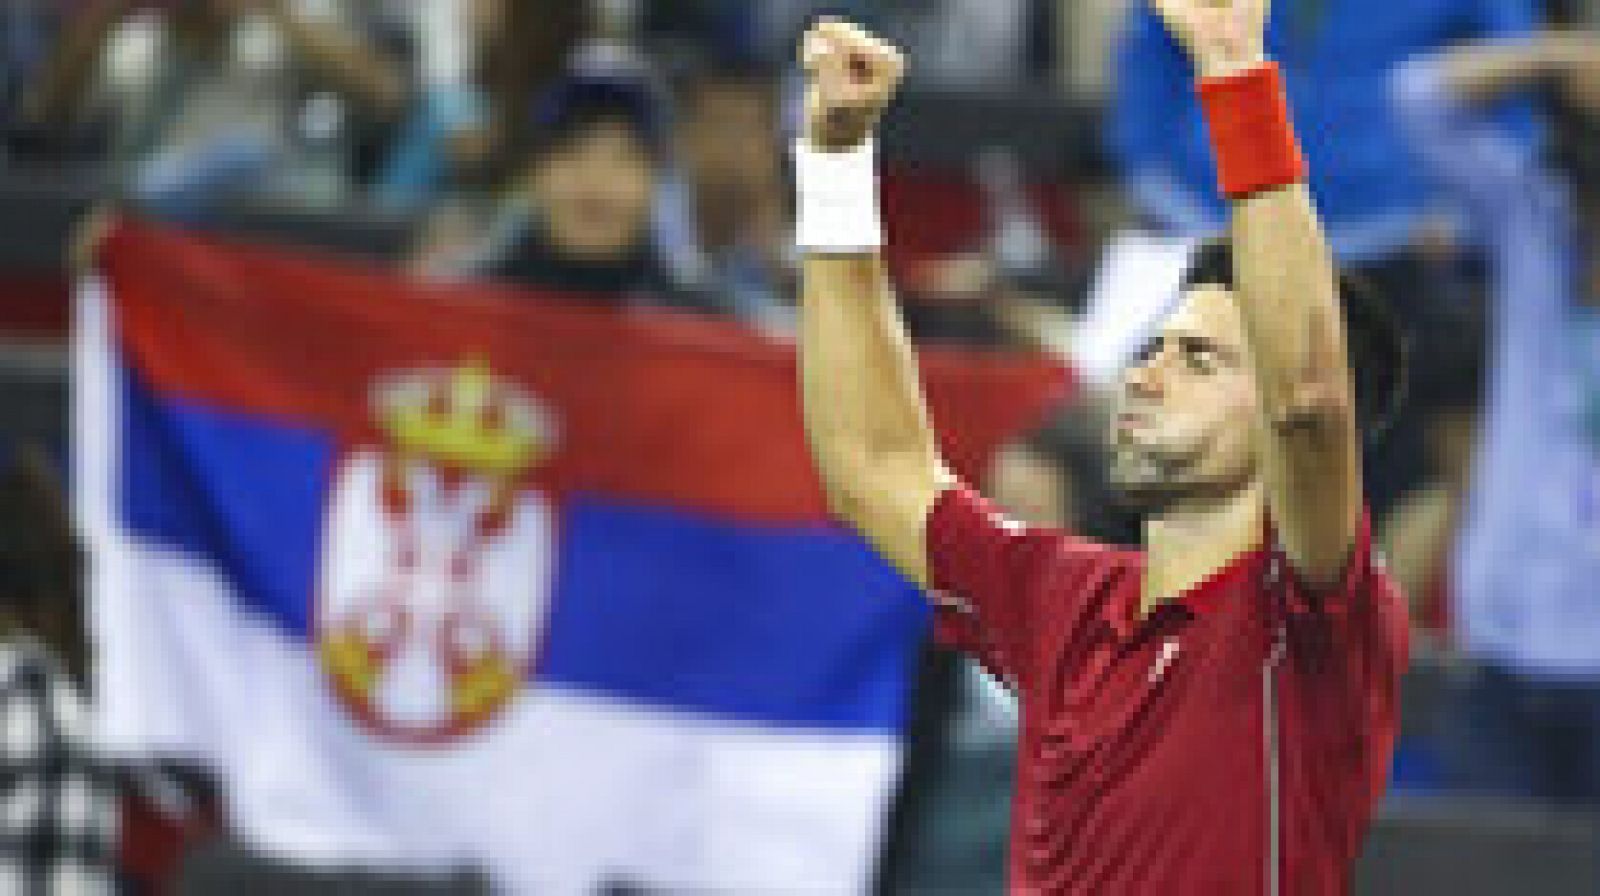 David Ferrer no tuvo opciones ante Novak Djokovic, que impuso su firmeza ante el tenista alicantino, incapaz de superar el férreo servicio del número uno del mundo.